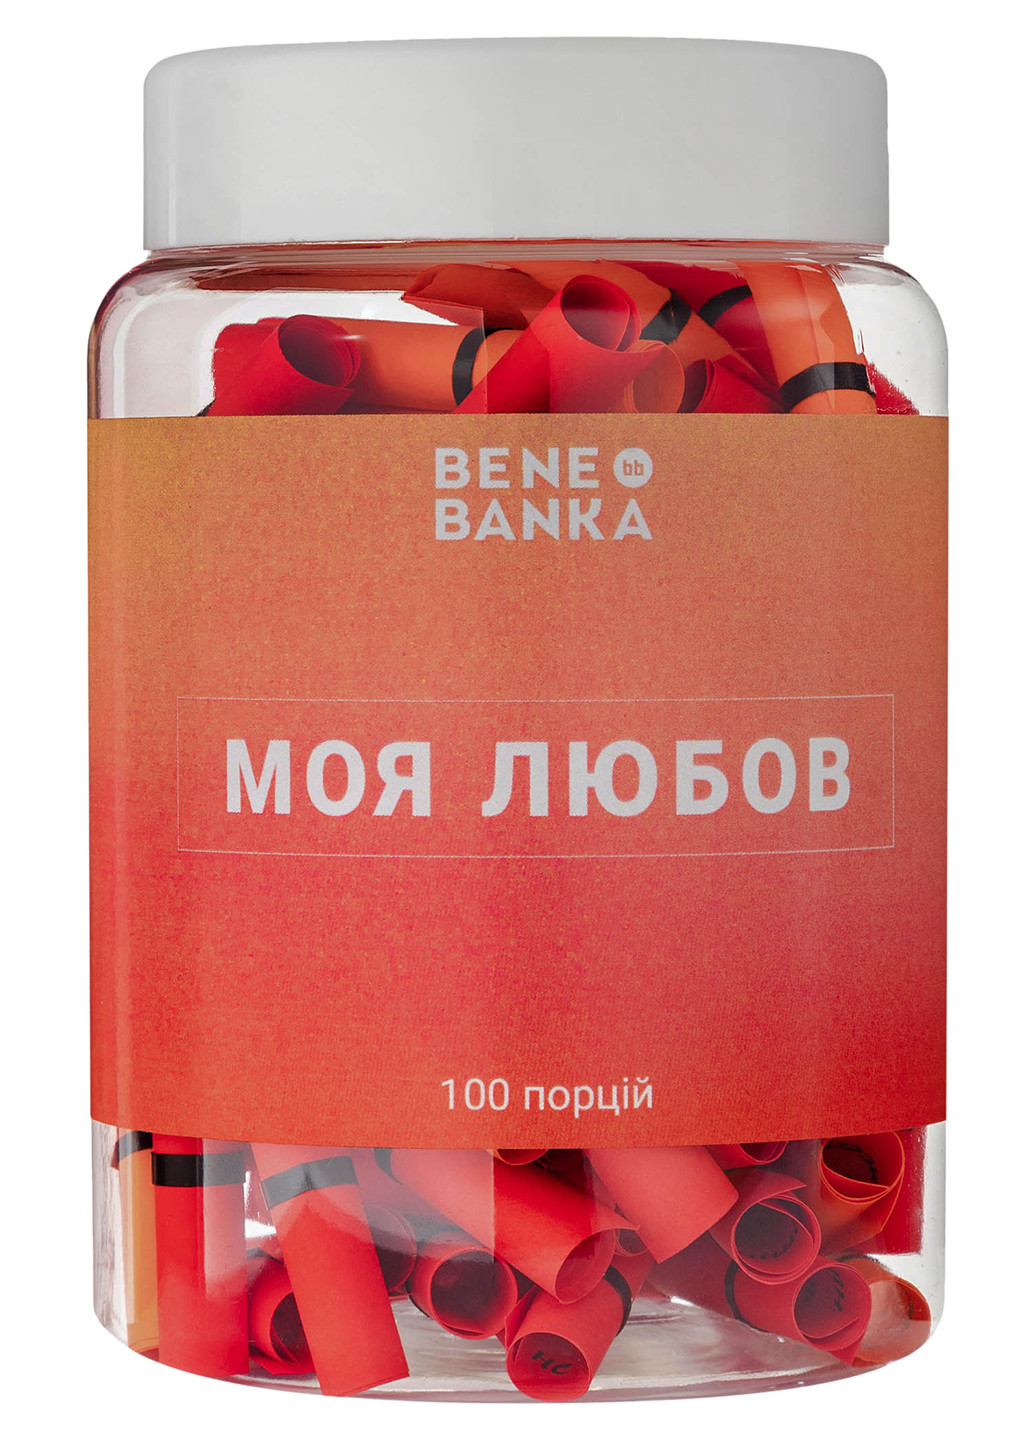 Баночка з записками "Моя любов" украинский язык Bene Banka (200653608)